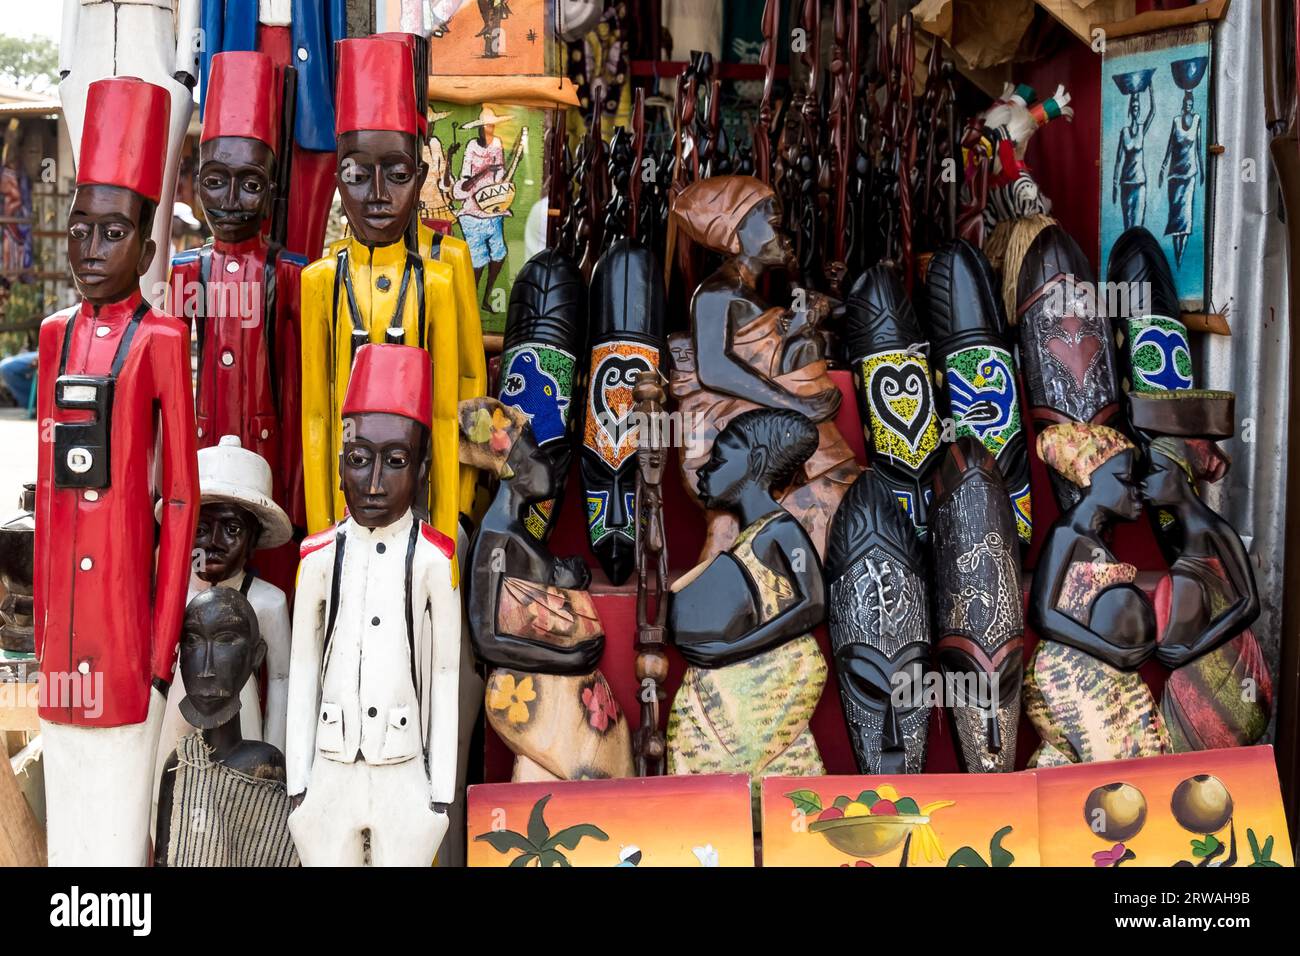 Masques et artisanat de Côte d'Ivoire : art symbolique dans les divinités, les esprits et les animaux reflétant la profondeur des traditions ivoiriennes Banque D'Images